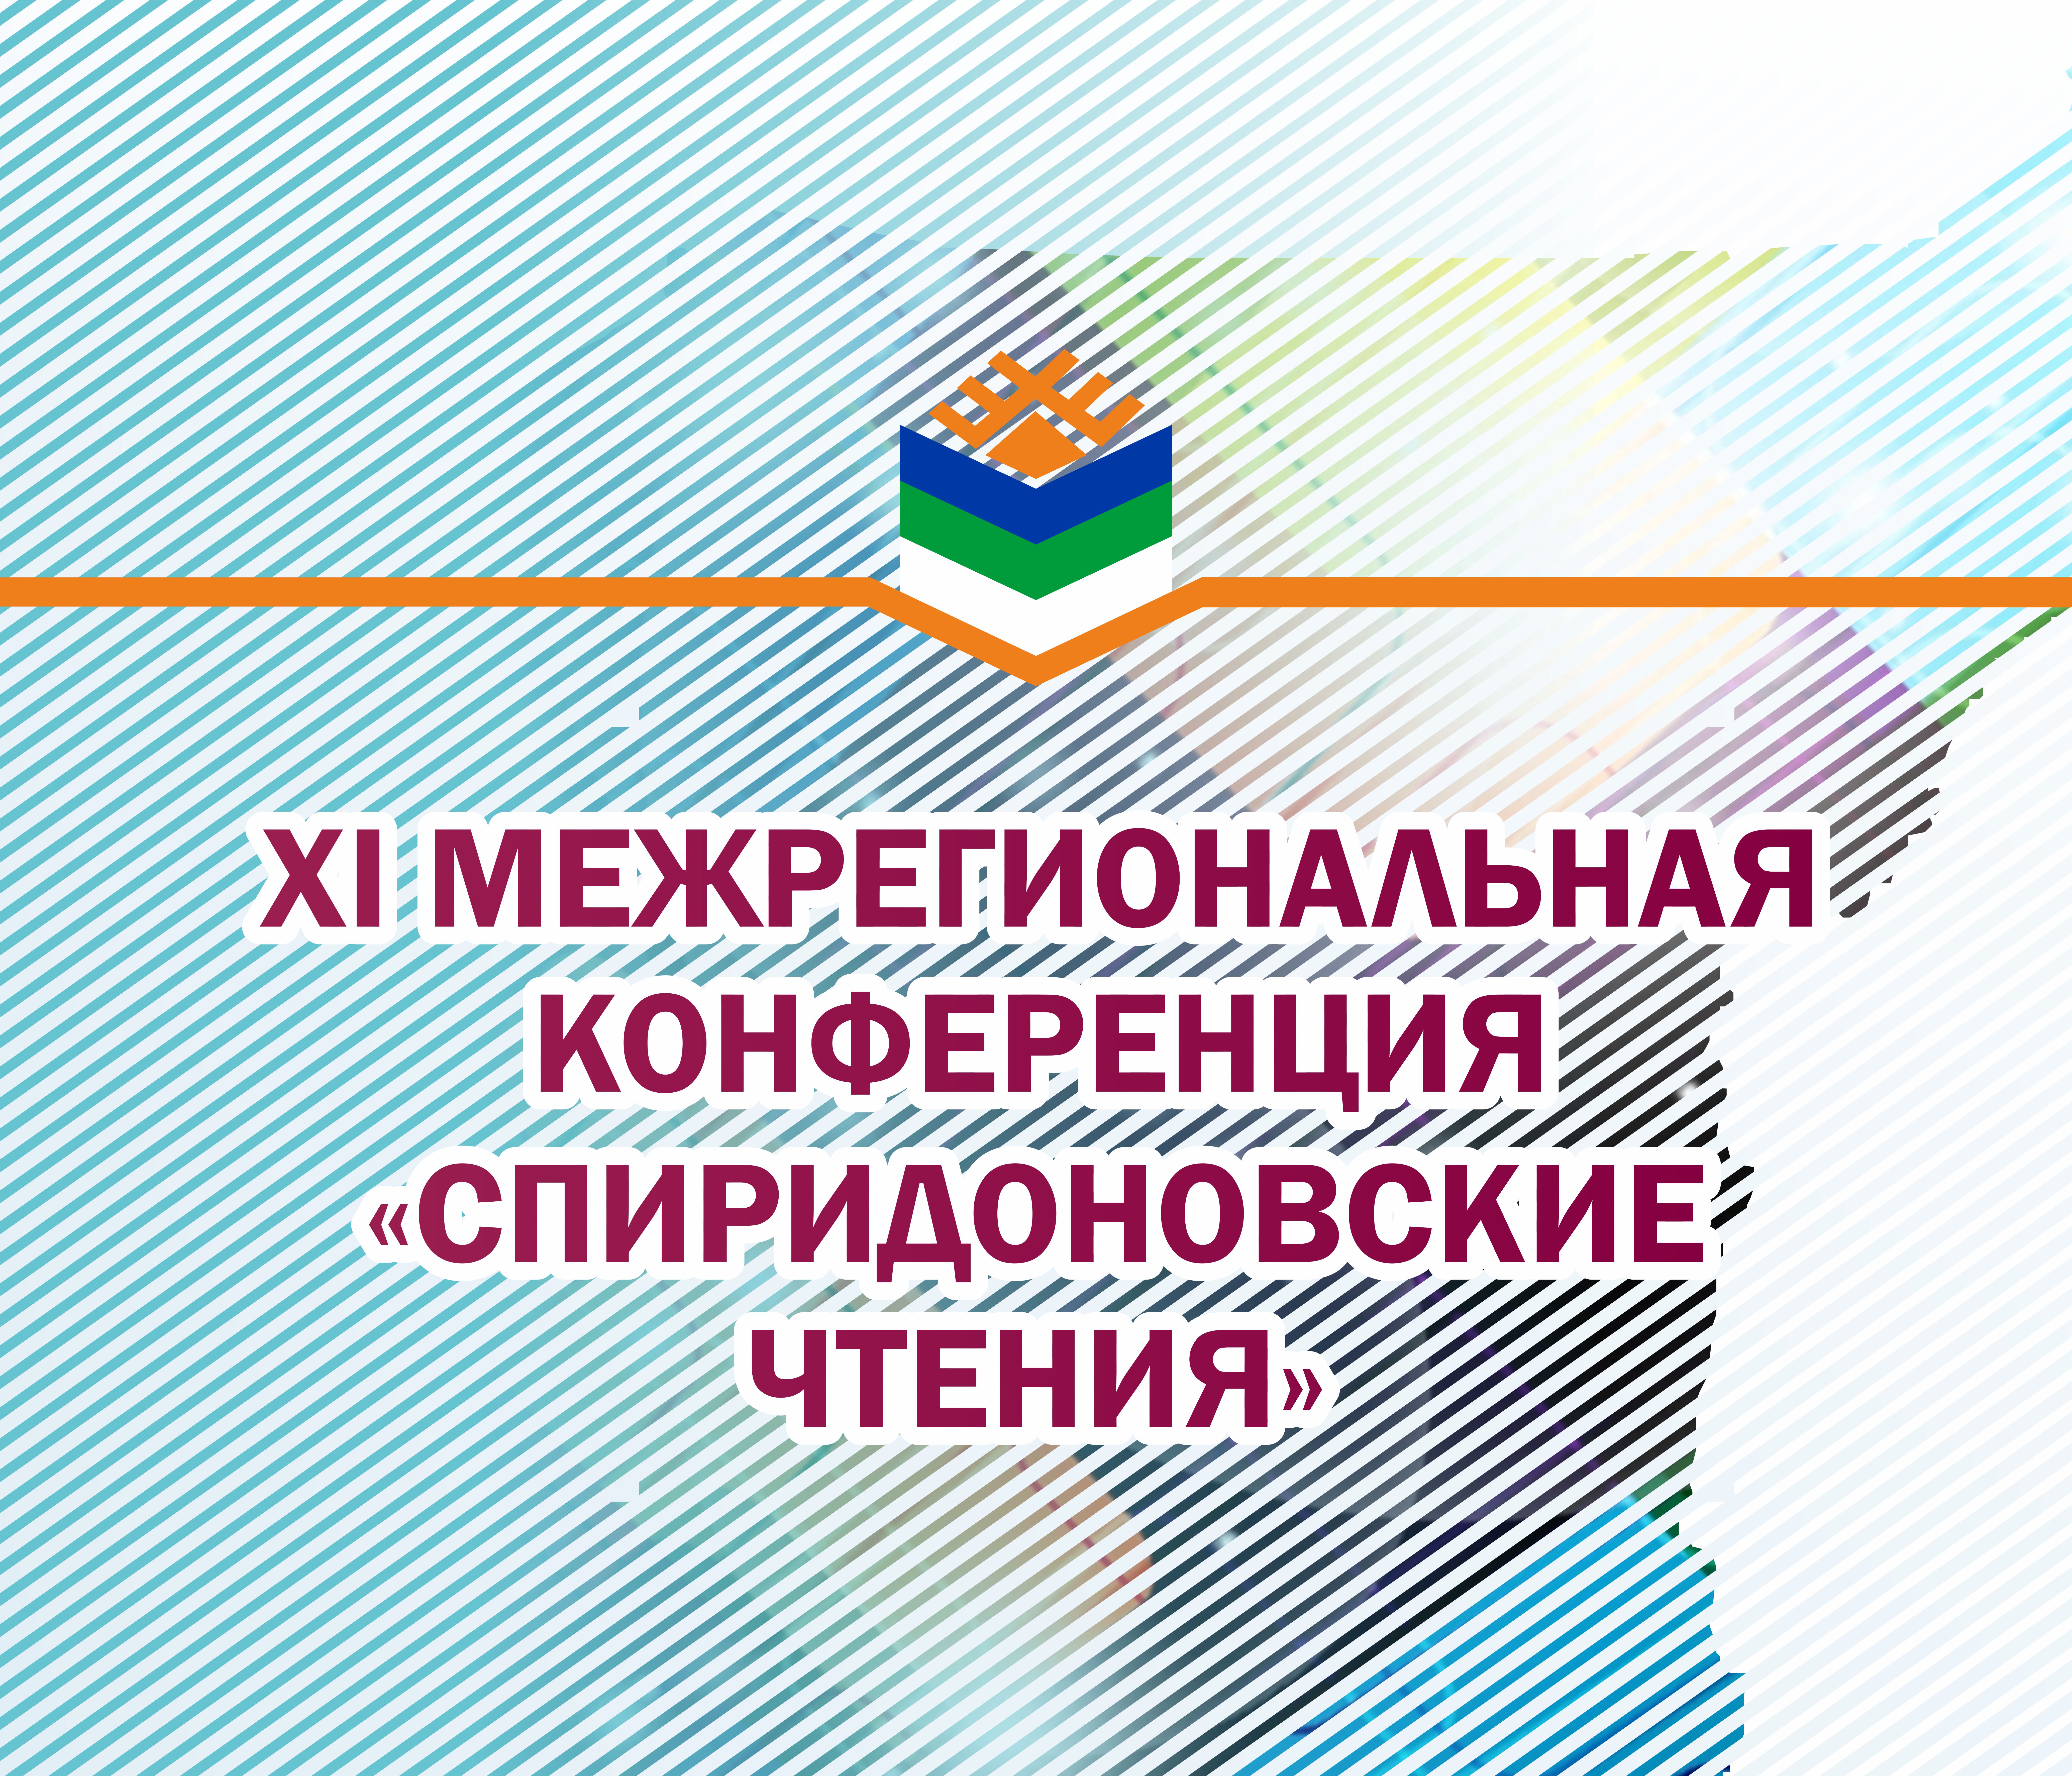 XI межрегиональная конференция Спиридоновские чтения.